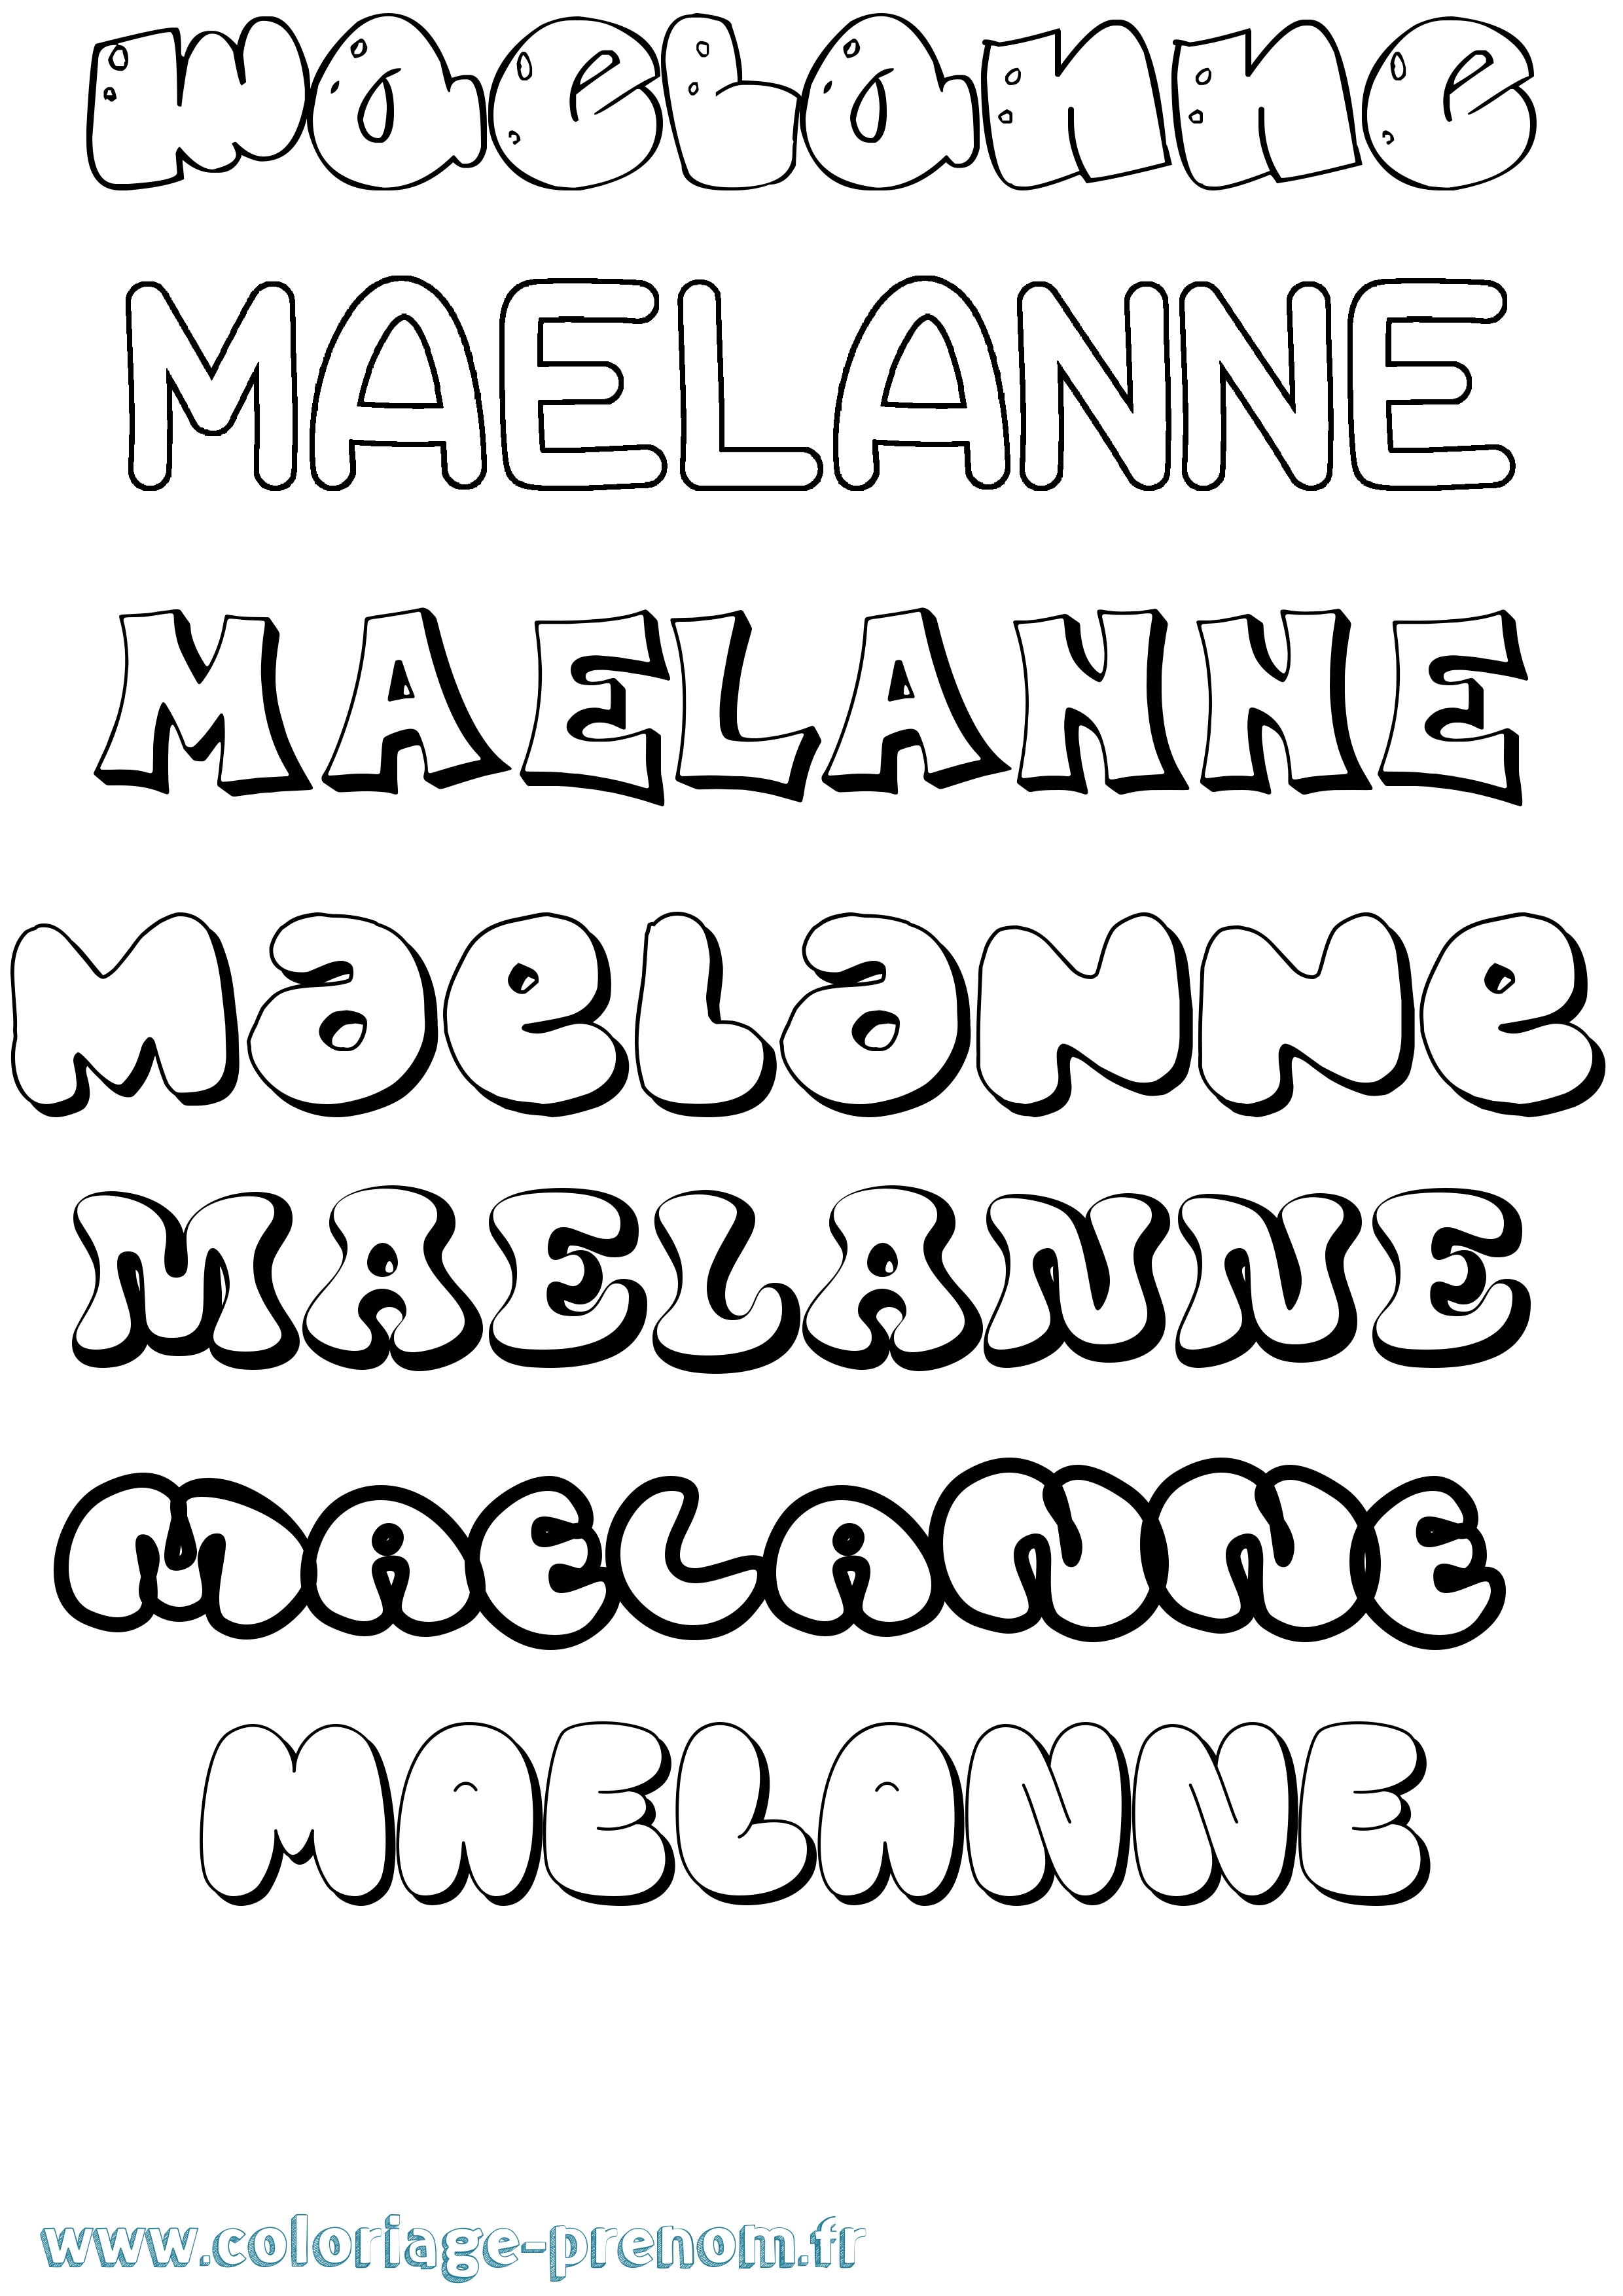 Coloriage prénom Maelanne Bubble